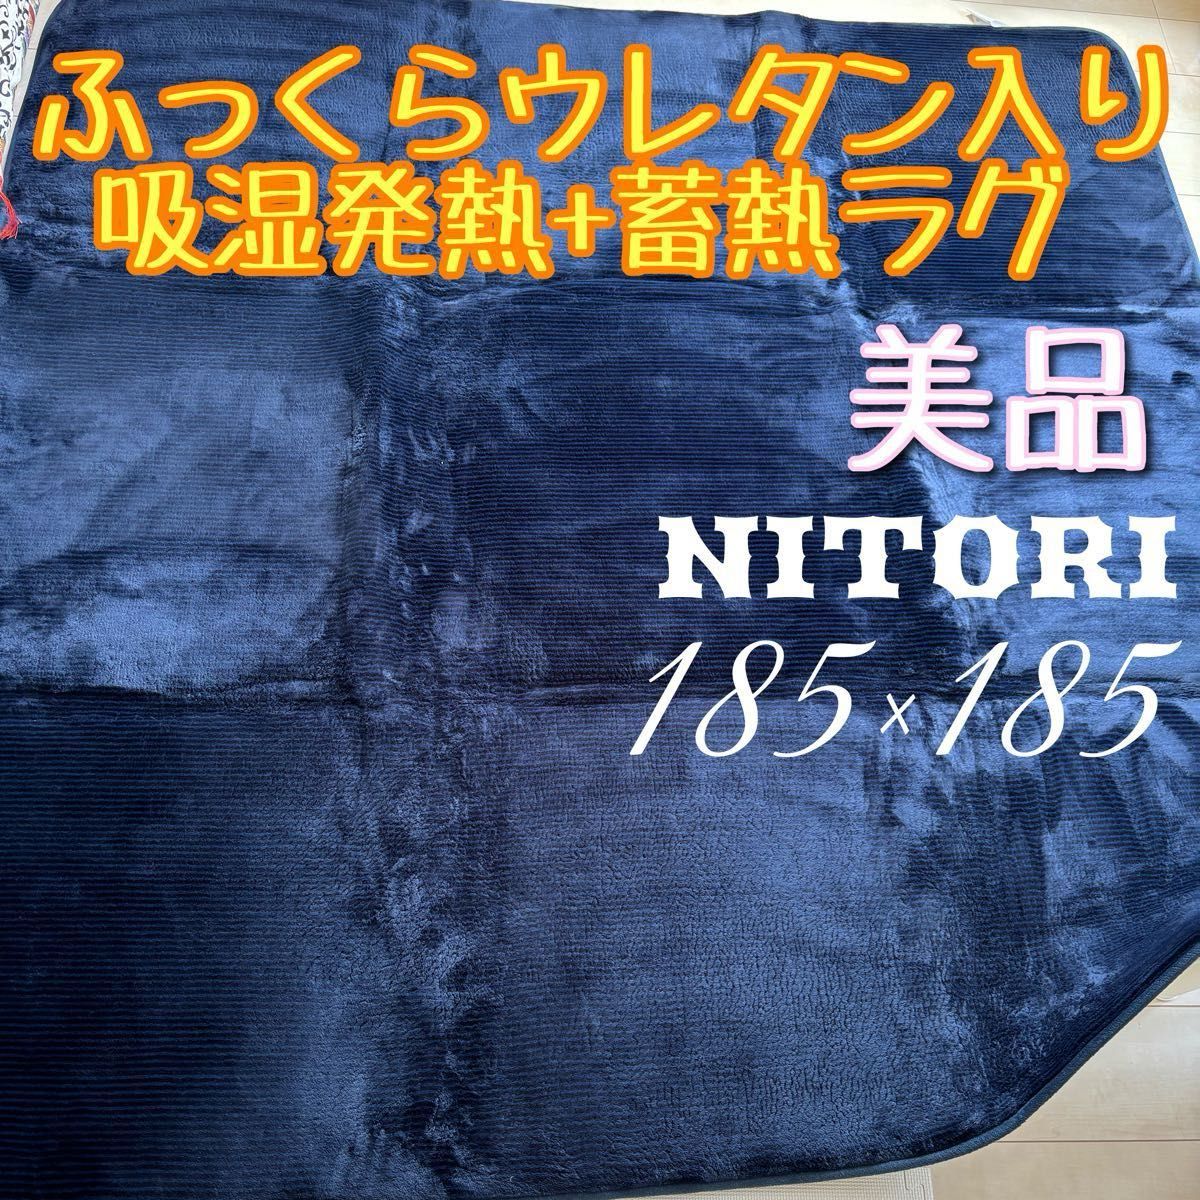 NITORI ニトリ 手触り抜群 ふっくらウレタン入り 吸湿発熱+蓄熱ラグ 185cm×185cm